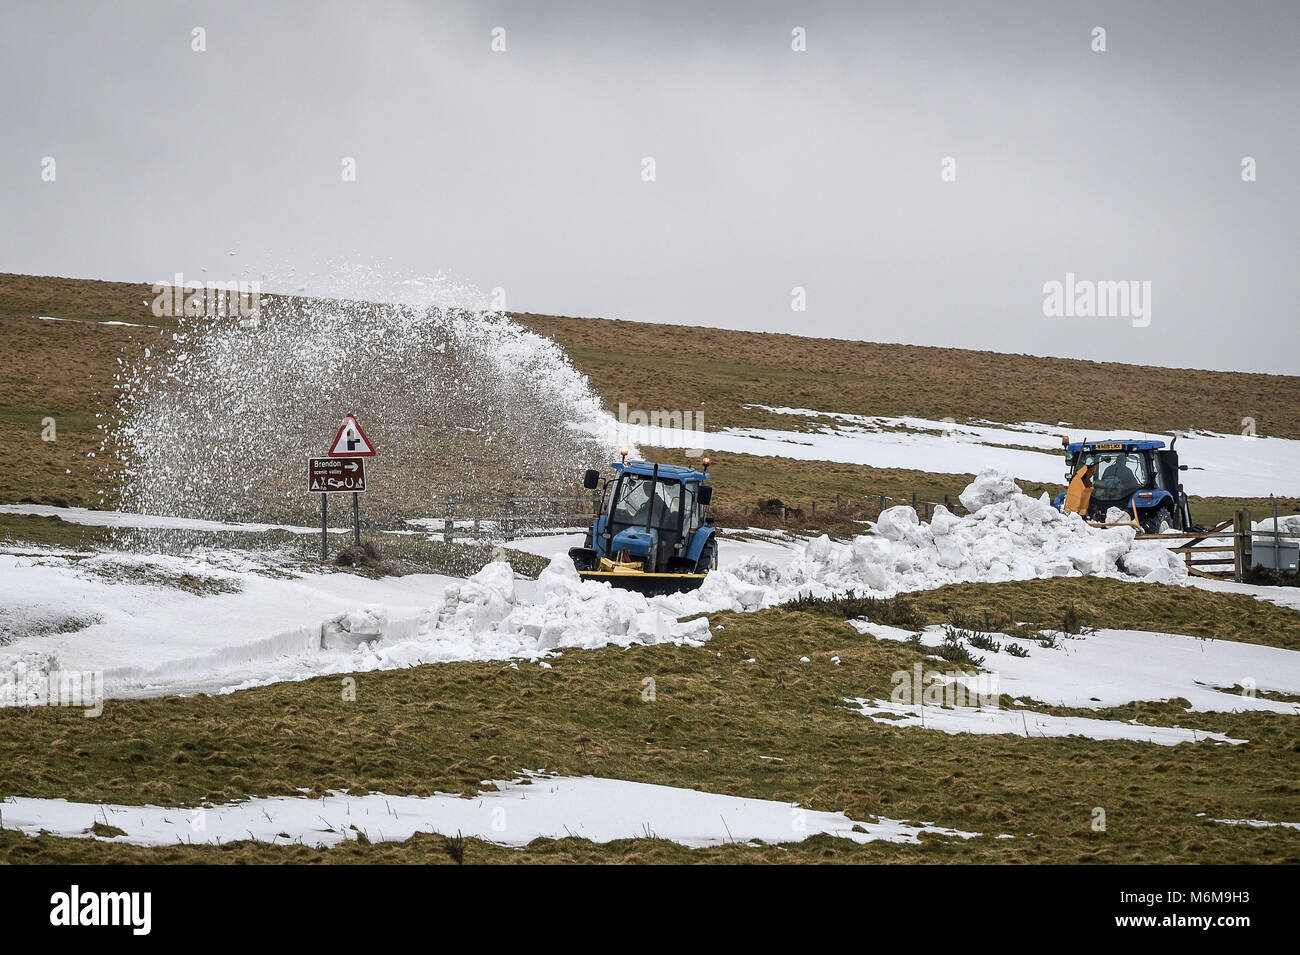 Landmaschinen ist räumen Schnee von einem Abschnitt der A 39 in Porlock Hill, in der nähe von Lynton, Exmoor, nach starken Schneeverwehungen das betroffene Gebiet und schnitt Lynton Dorf. Stockfoto